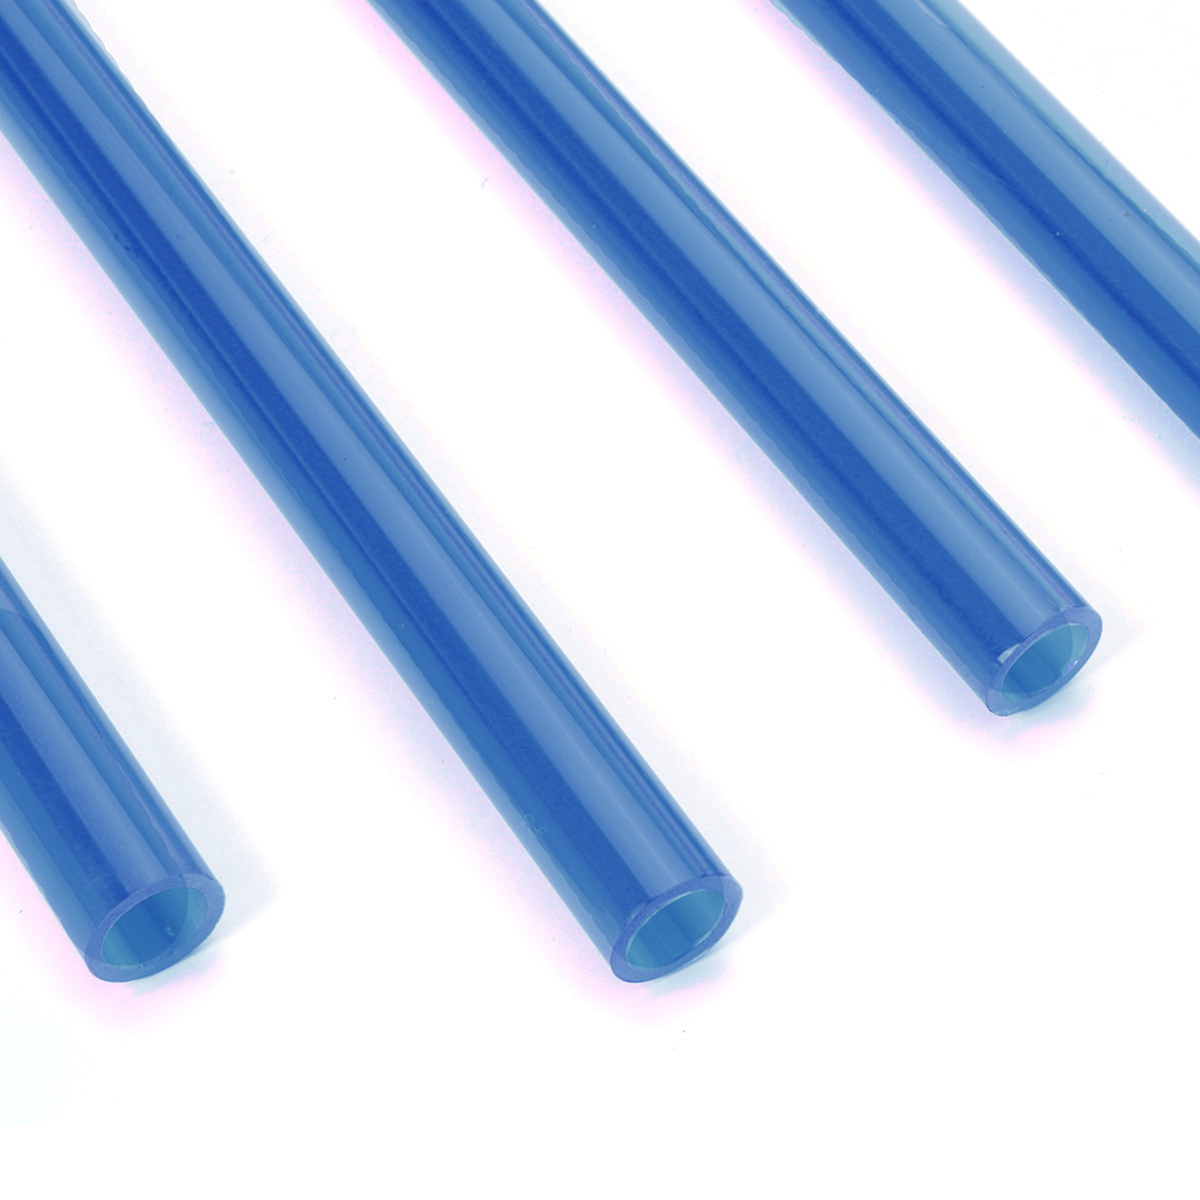 

4Pcs Blue 500mm PETG Tubing Жесткие жесткие трубы 10/14 мм Изгибающее водяное охлаждение Шланг Для ПК Чехол